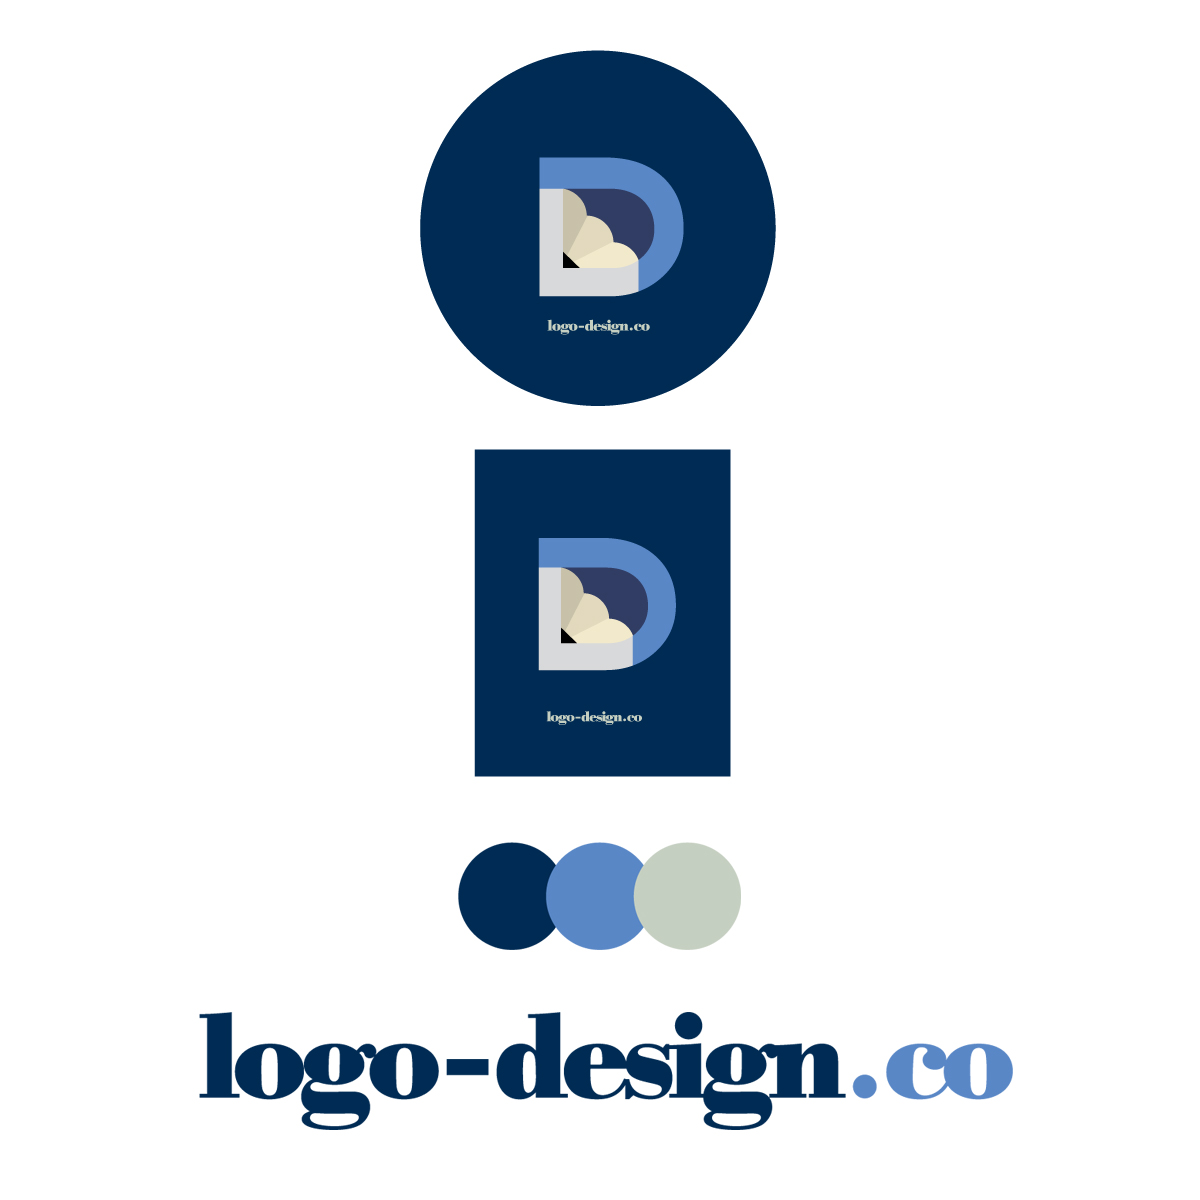 logo versions of logo design co logo